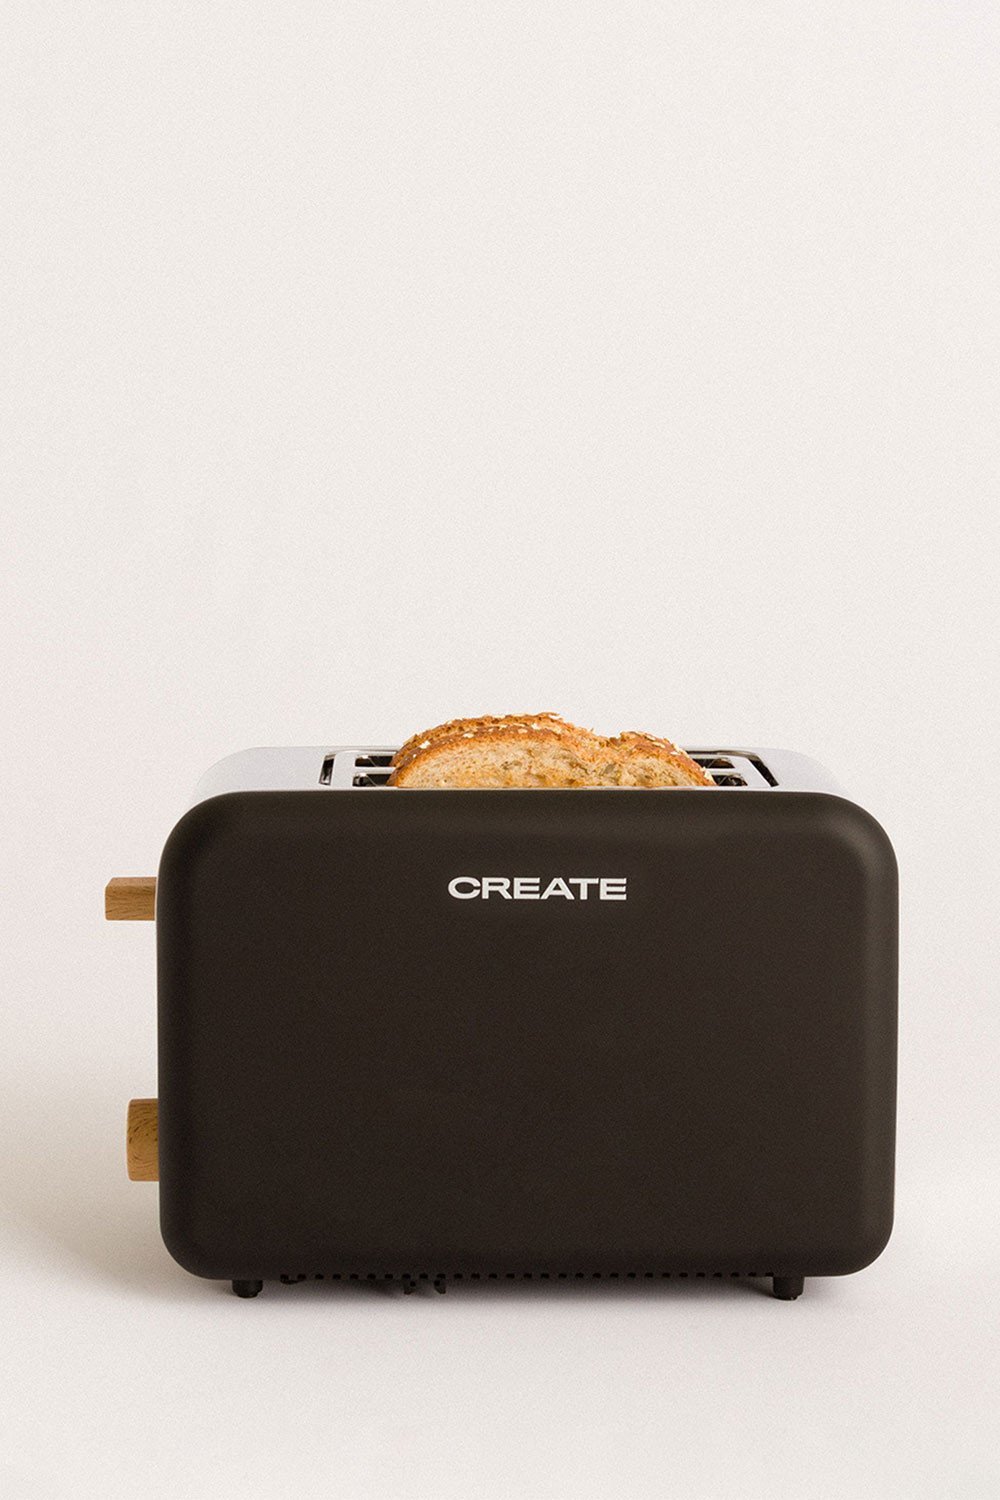 CREATE - TOAST - Broodrooster voor brede sneden, galerij beeld 1